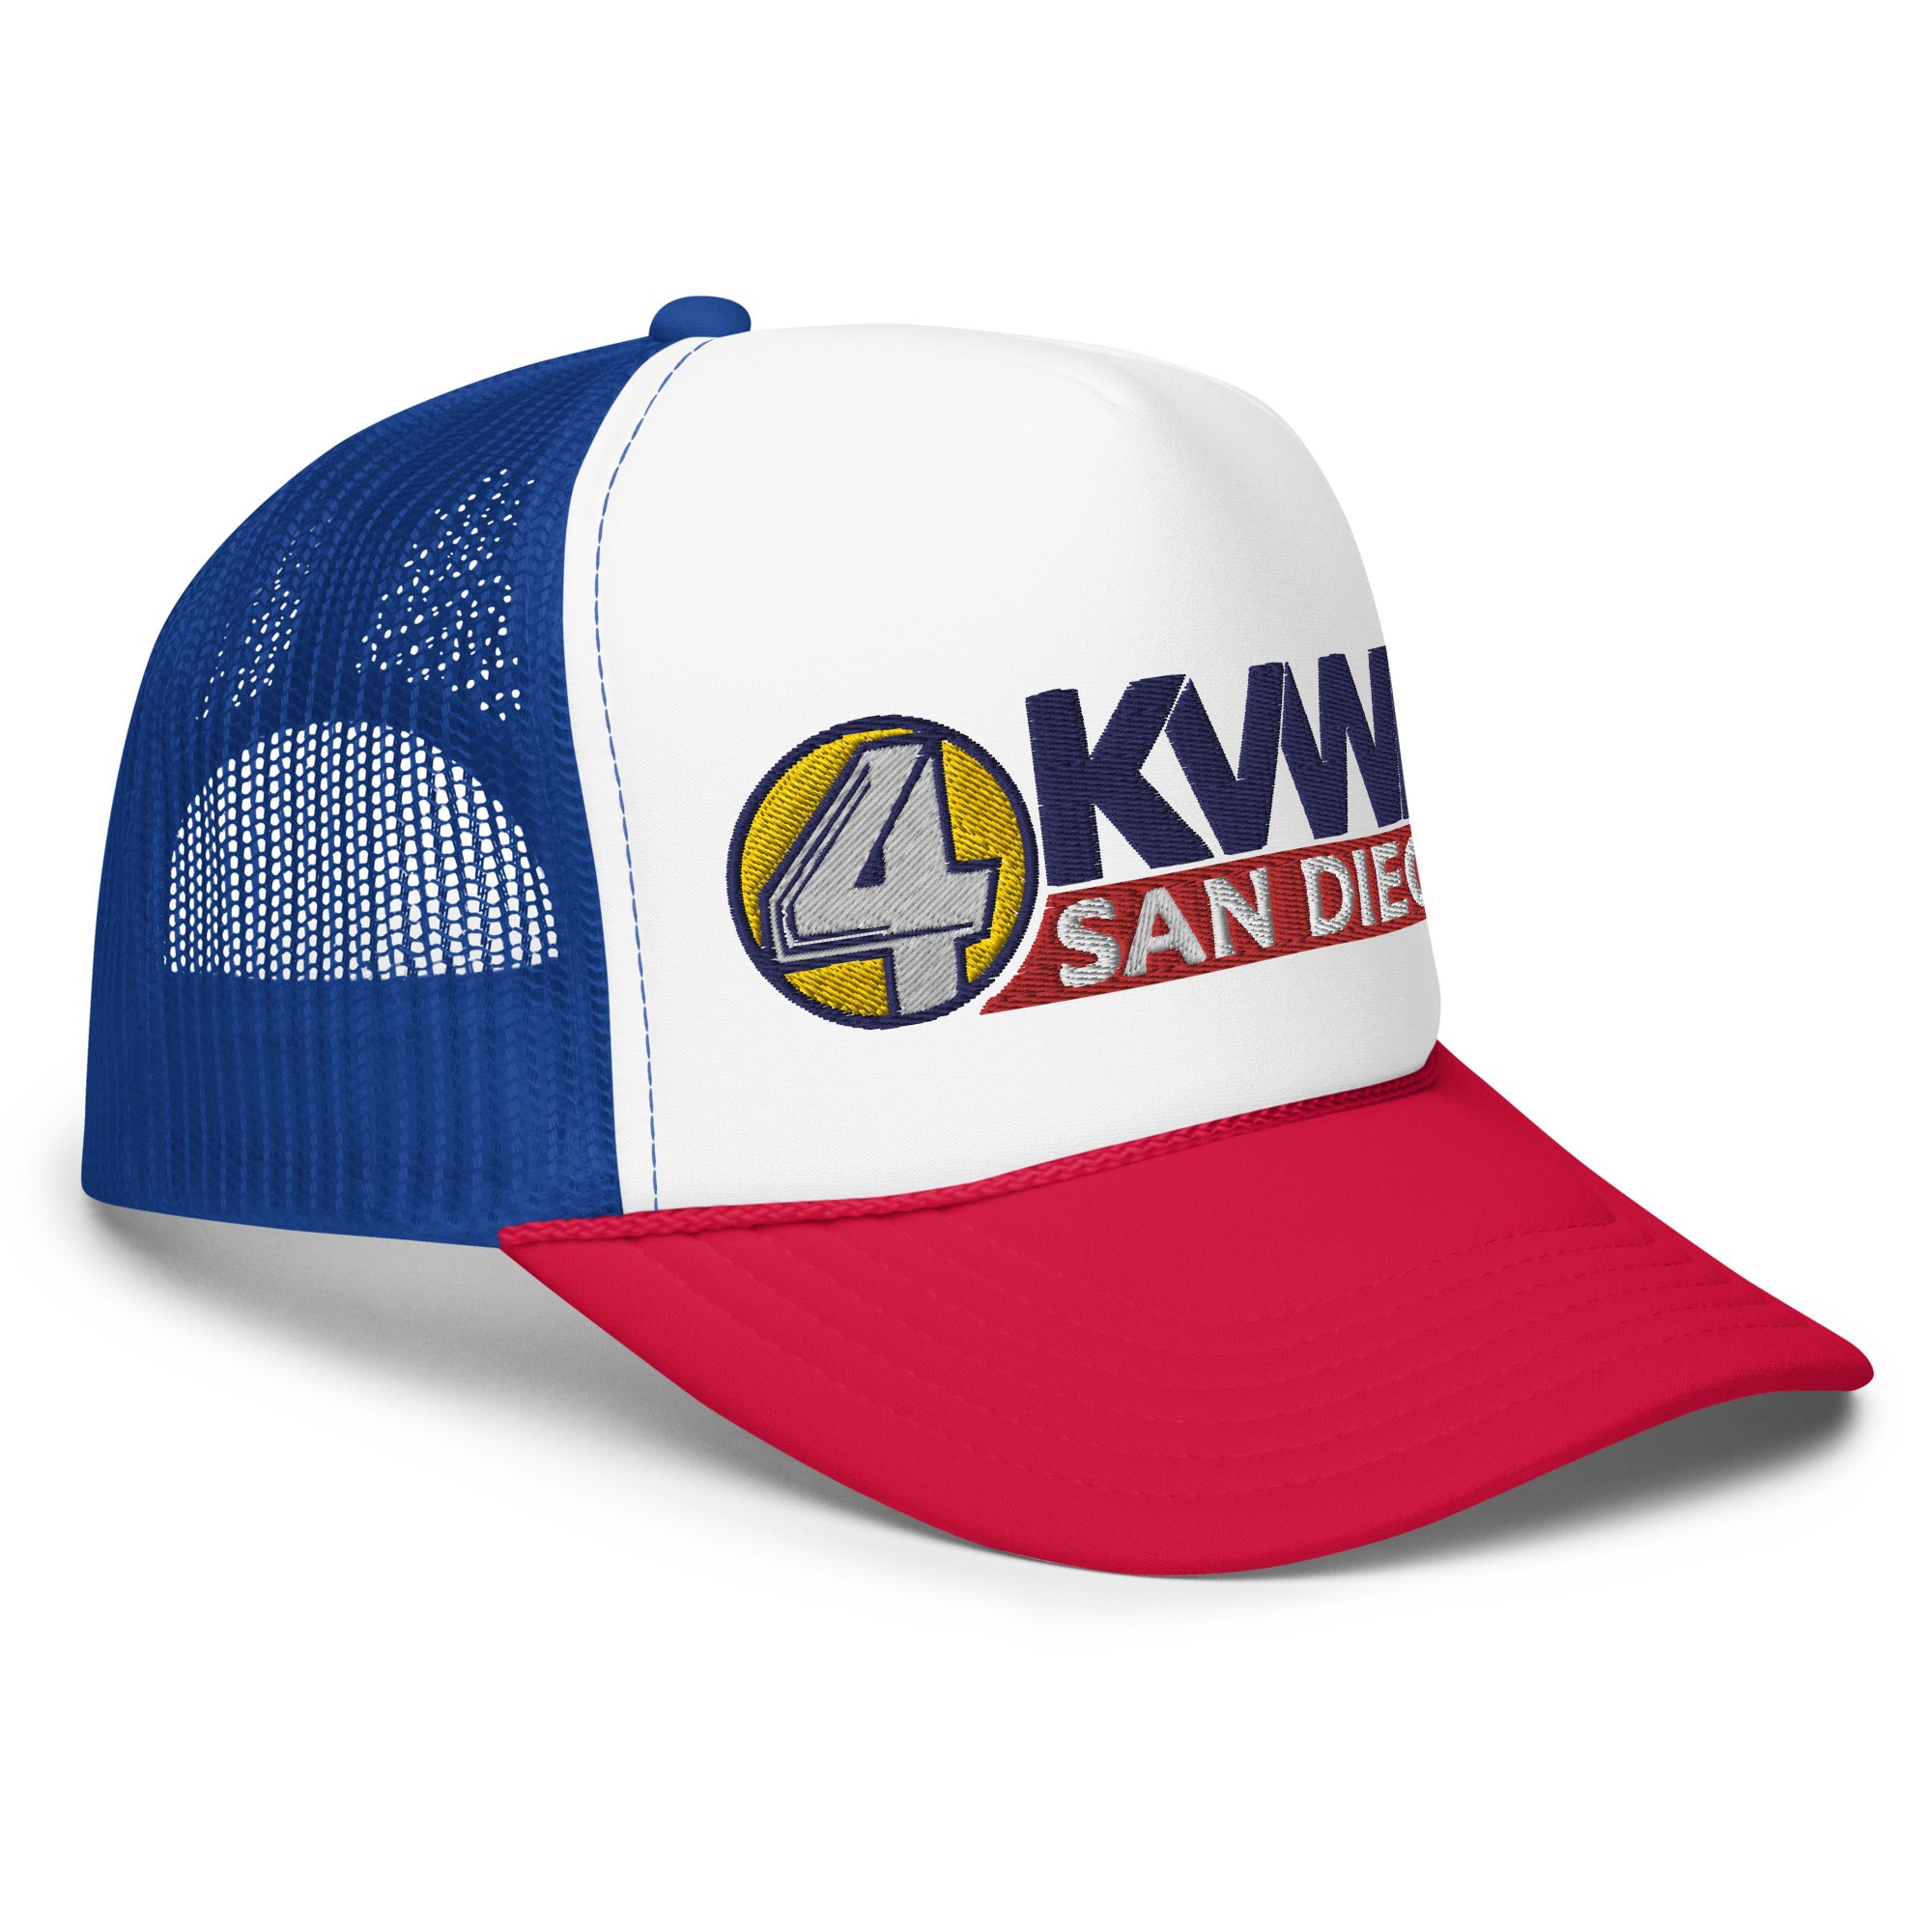 KVWN Channel 4 San Diego Anchorman Foam Trucker Hat